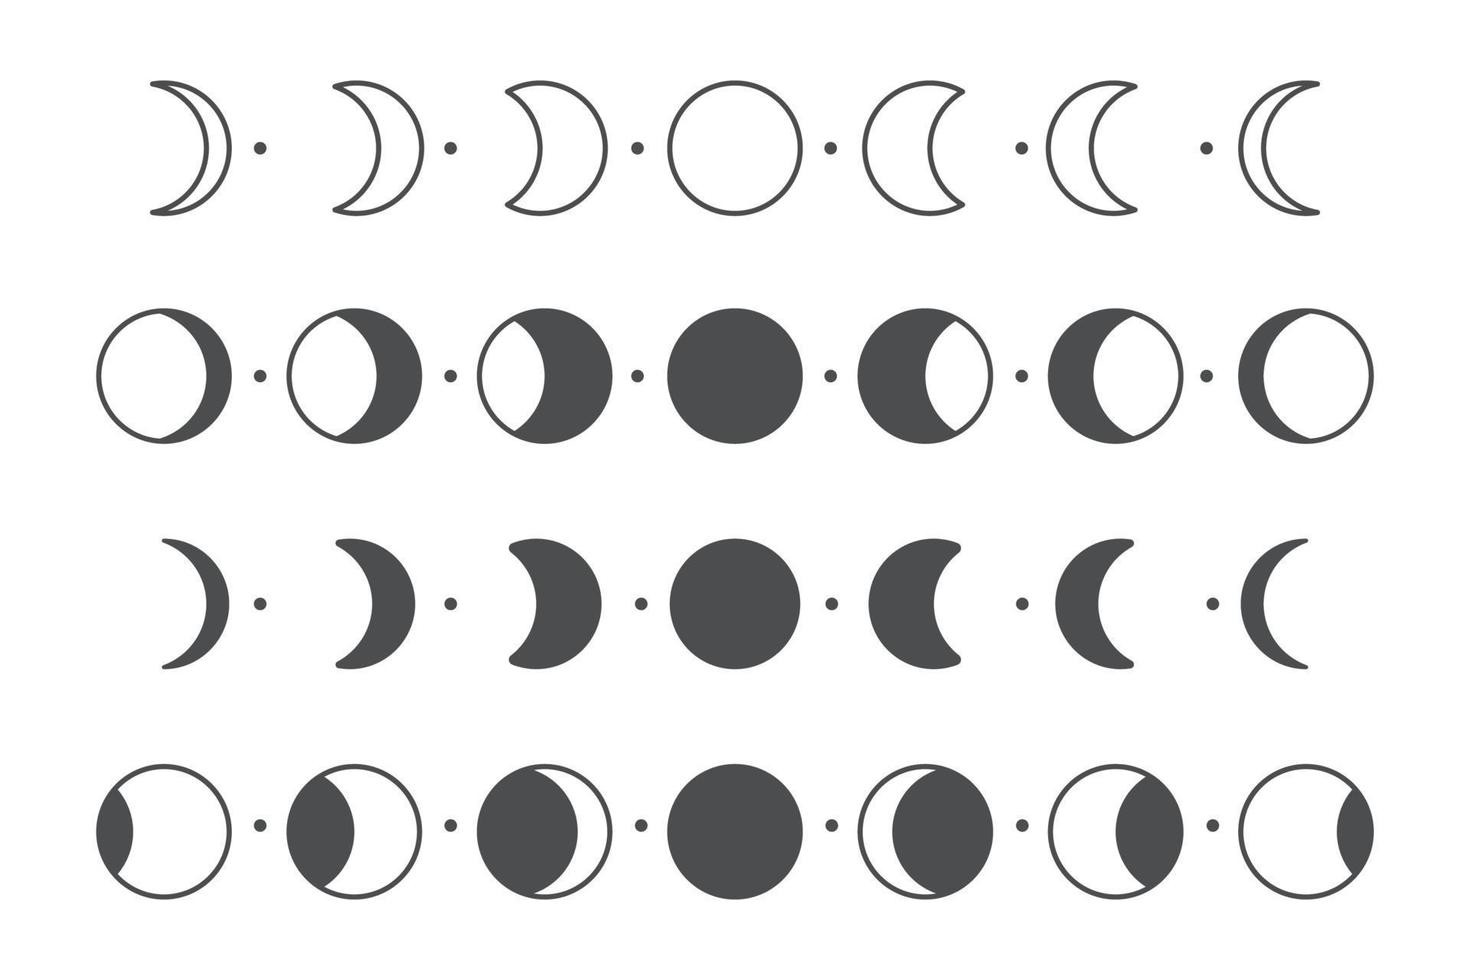 vector maanfase van de maan eenvoudige cirkel vorm ontwerp geïsoleerd op een witte achtergrond.